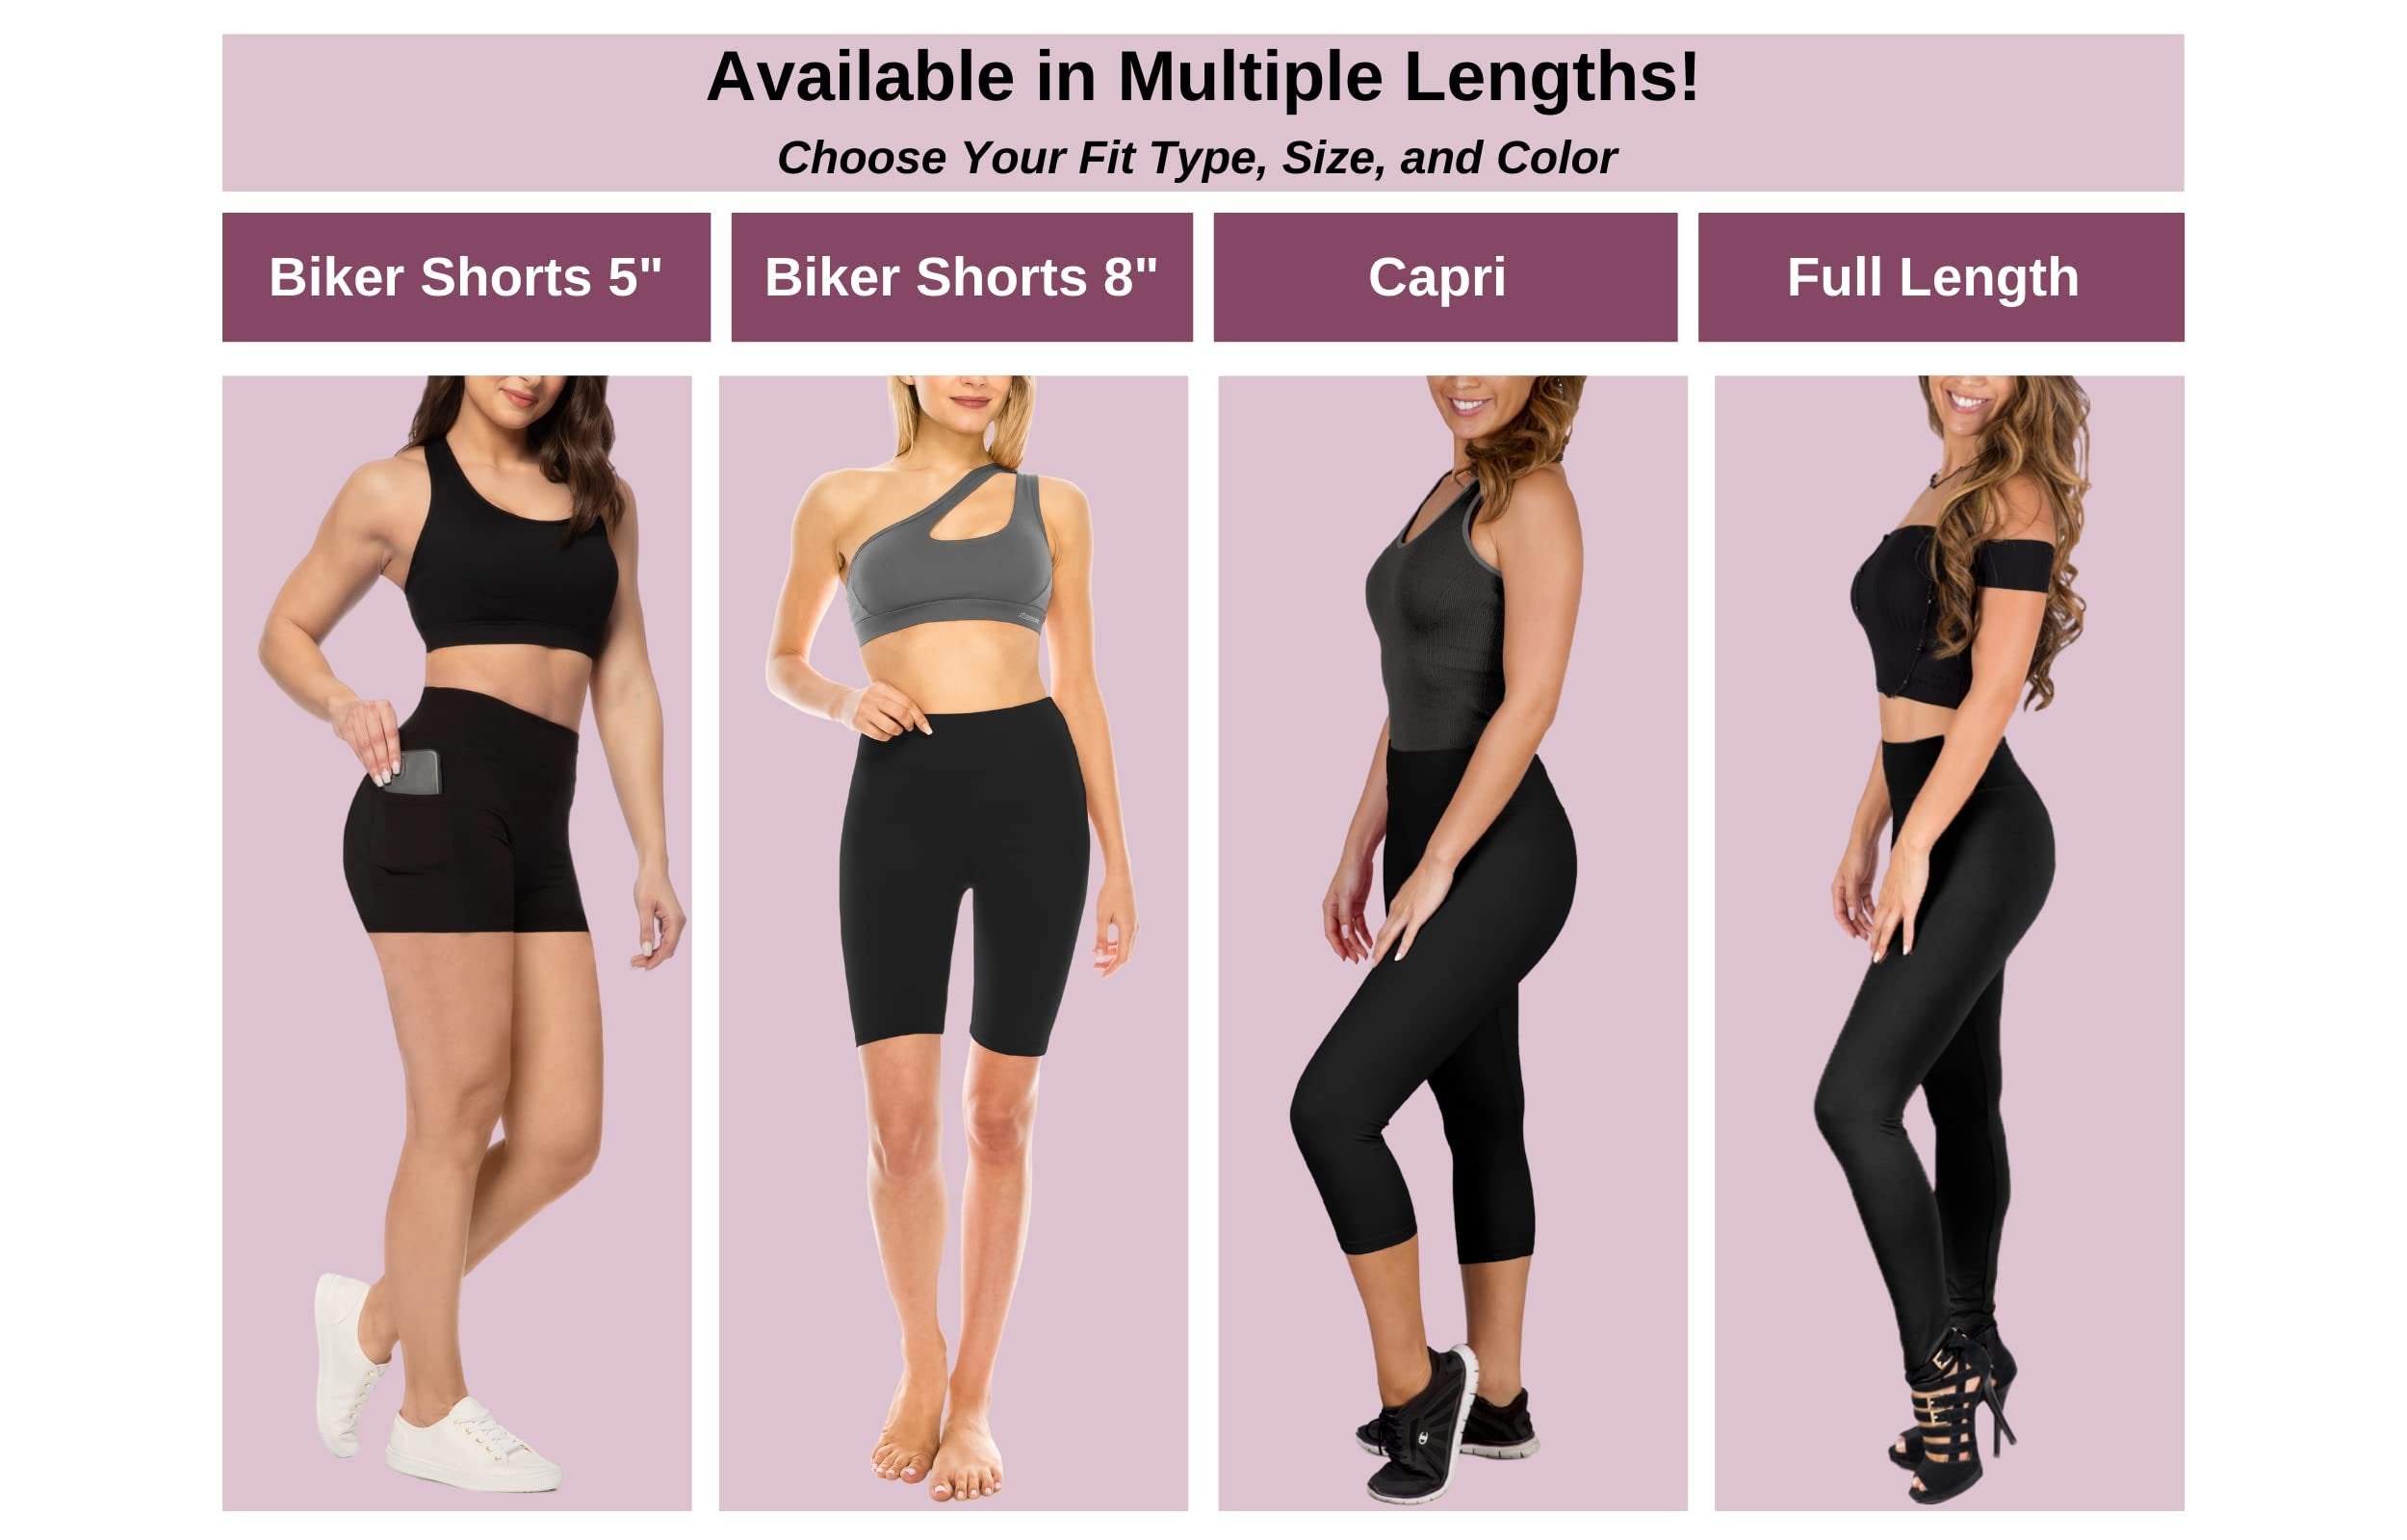 SATINA High Waisted Capri Leggings for Women - Capri Leggings for Women - High Waist for Tummy Control - Red Capri Leggings for |3 Inch Waistband (One Size, Red)